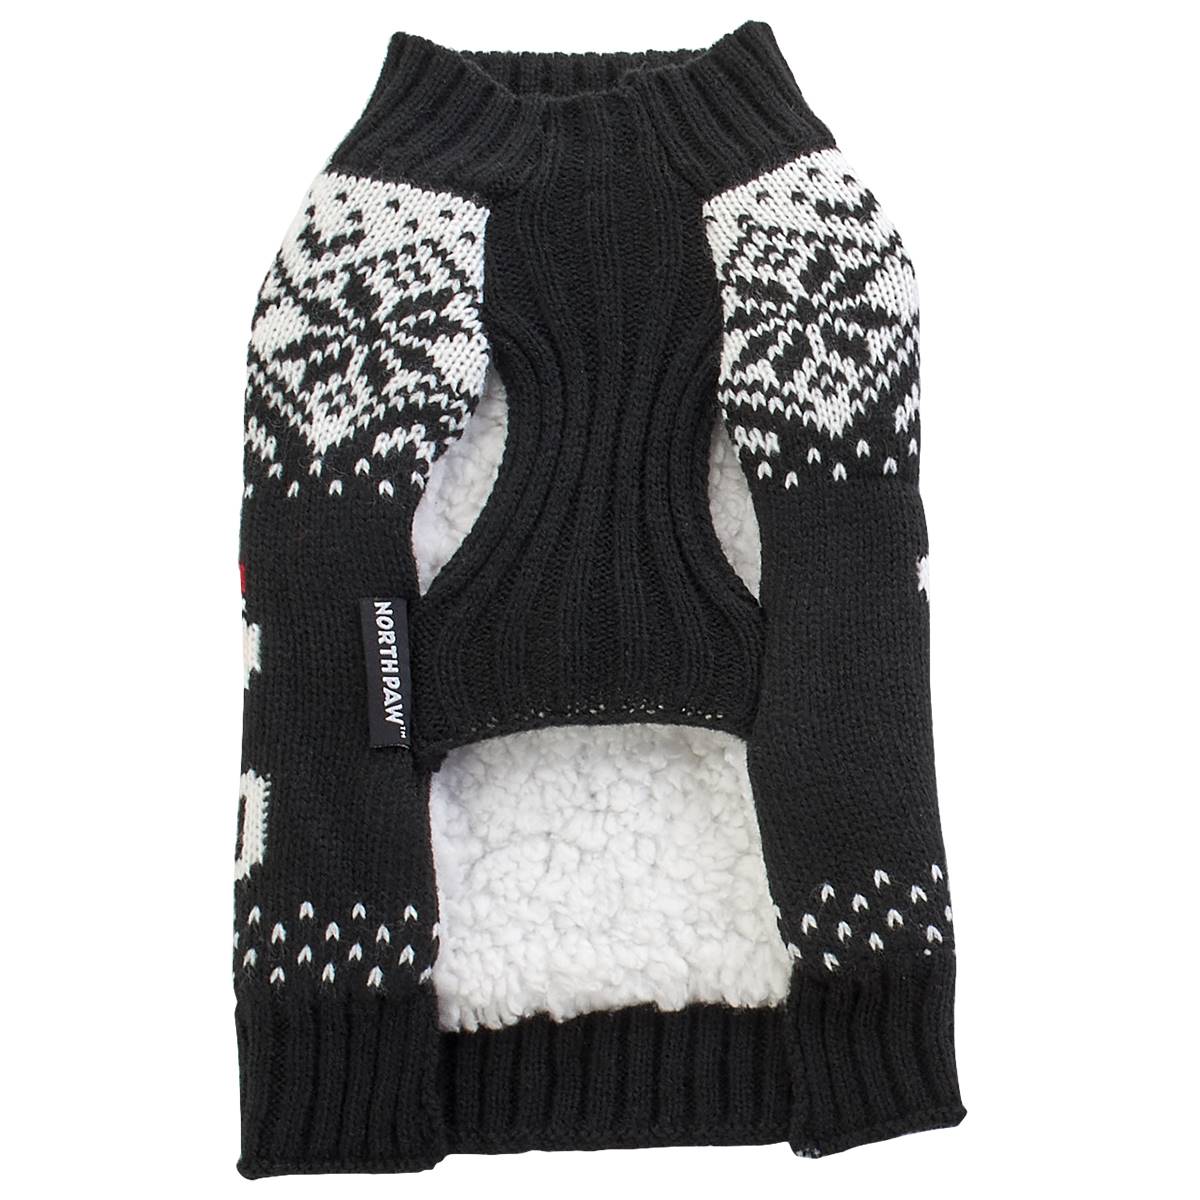 Northpaw Santa Jacquard Christmas Pet Sweater